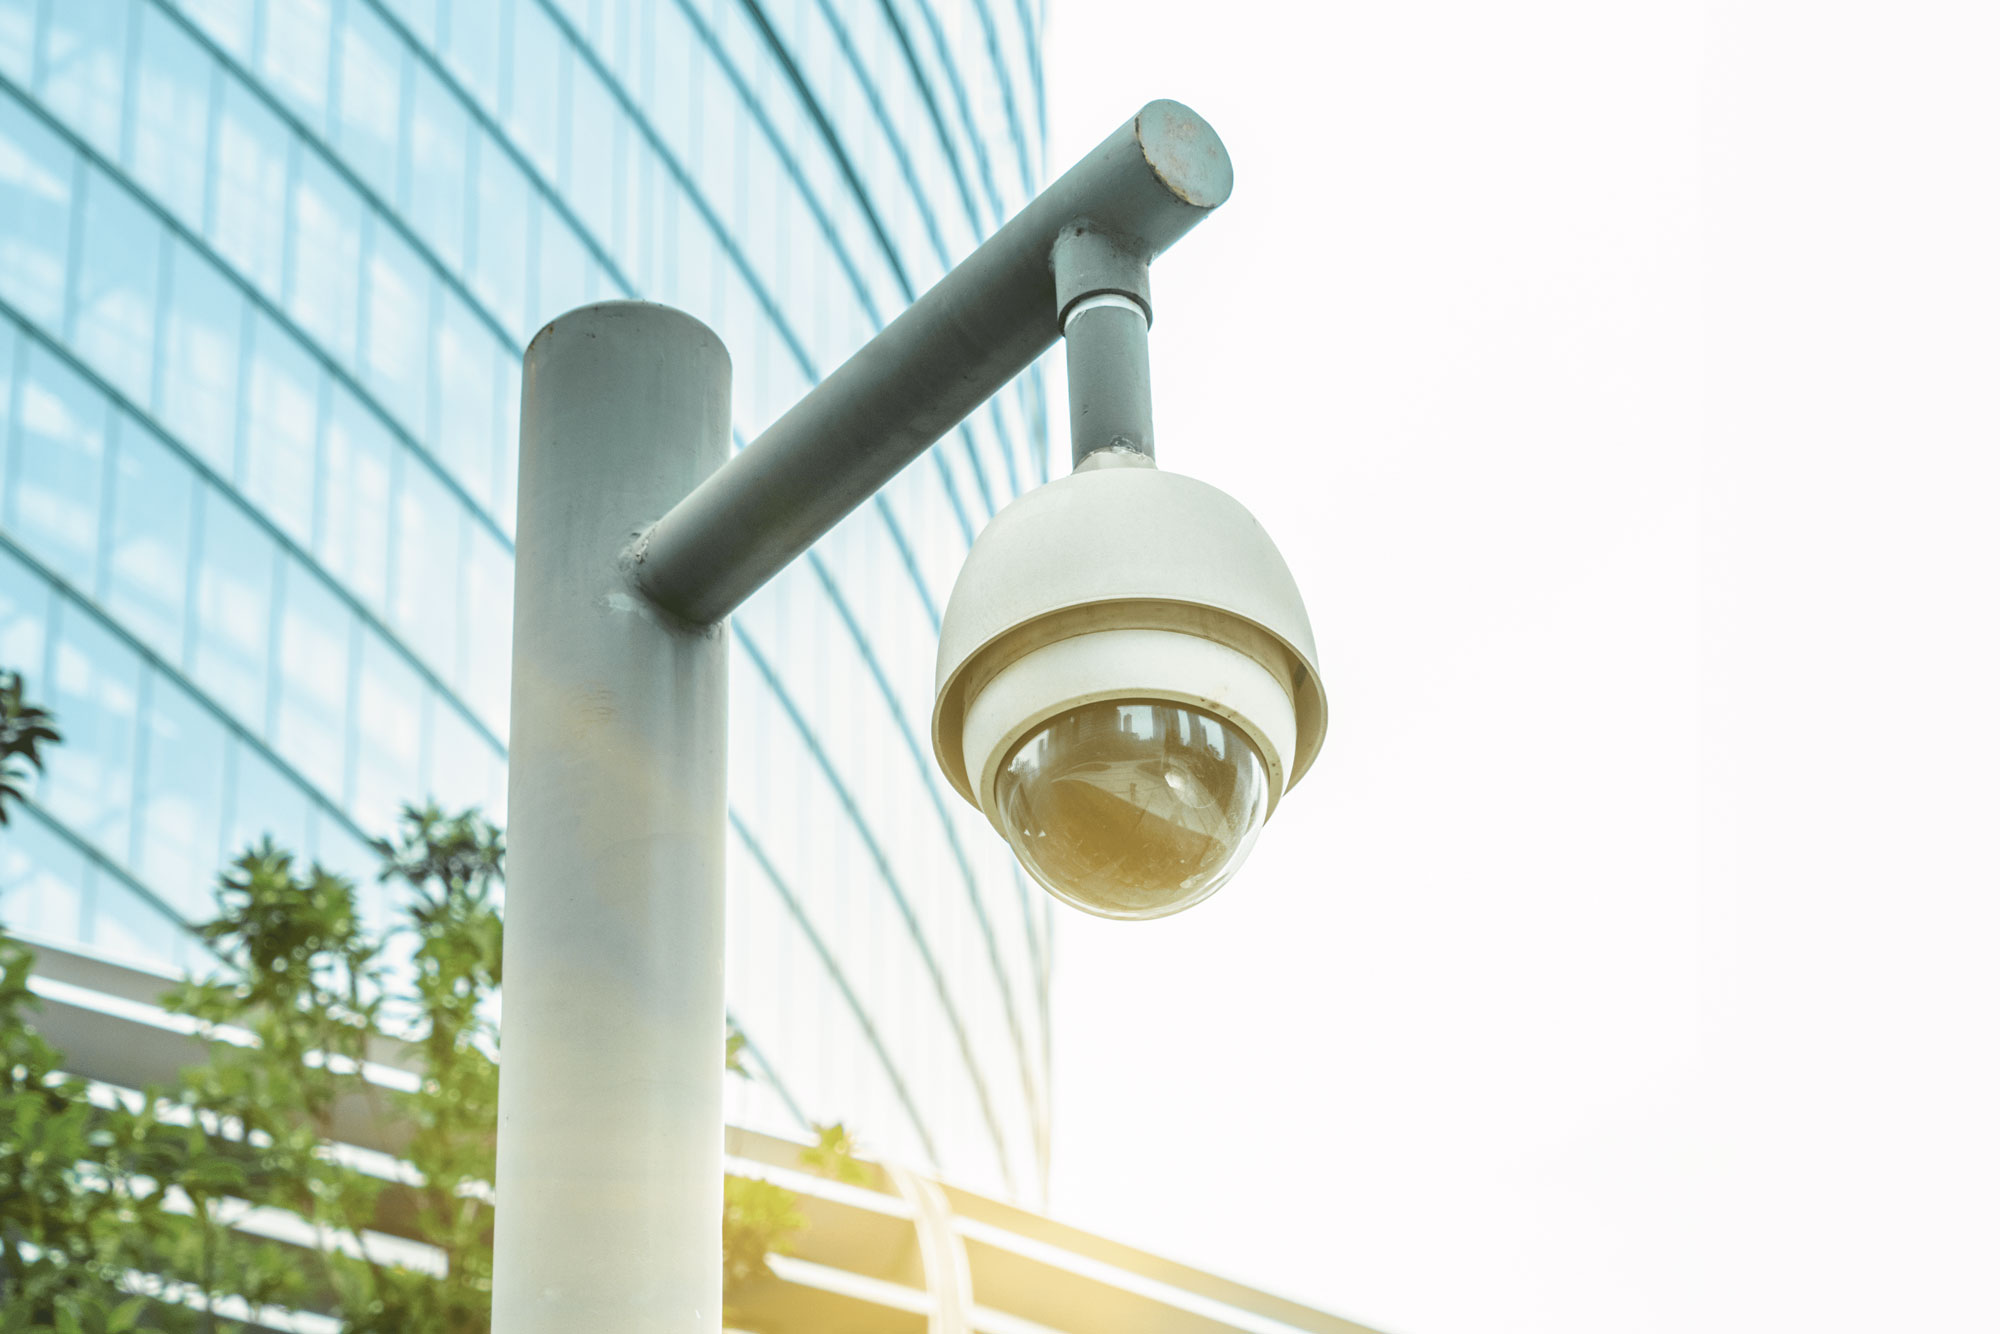 Outdoor security camera in a smart condo community